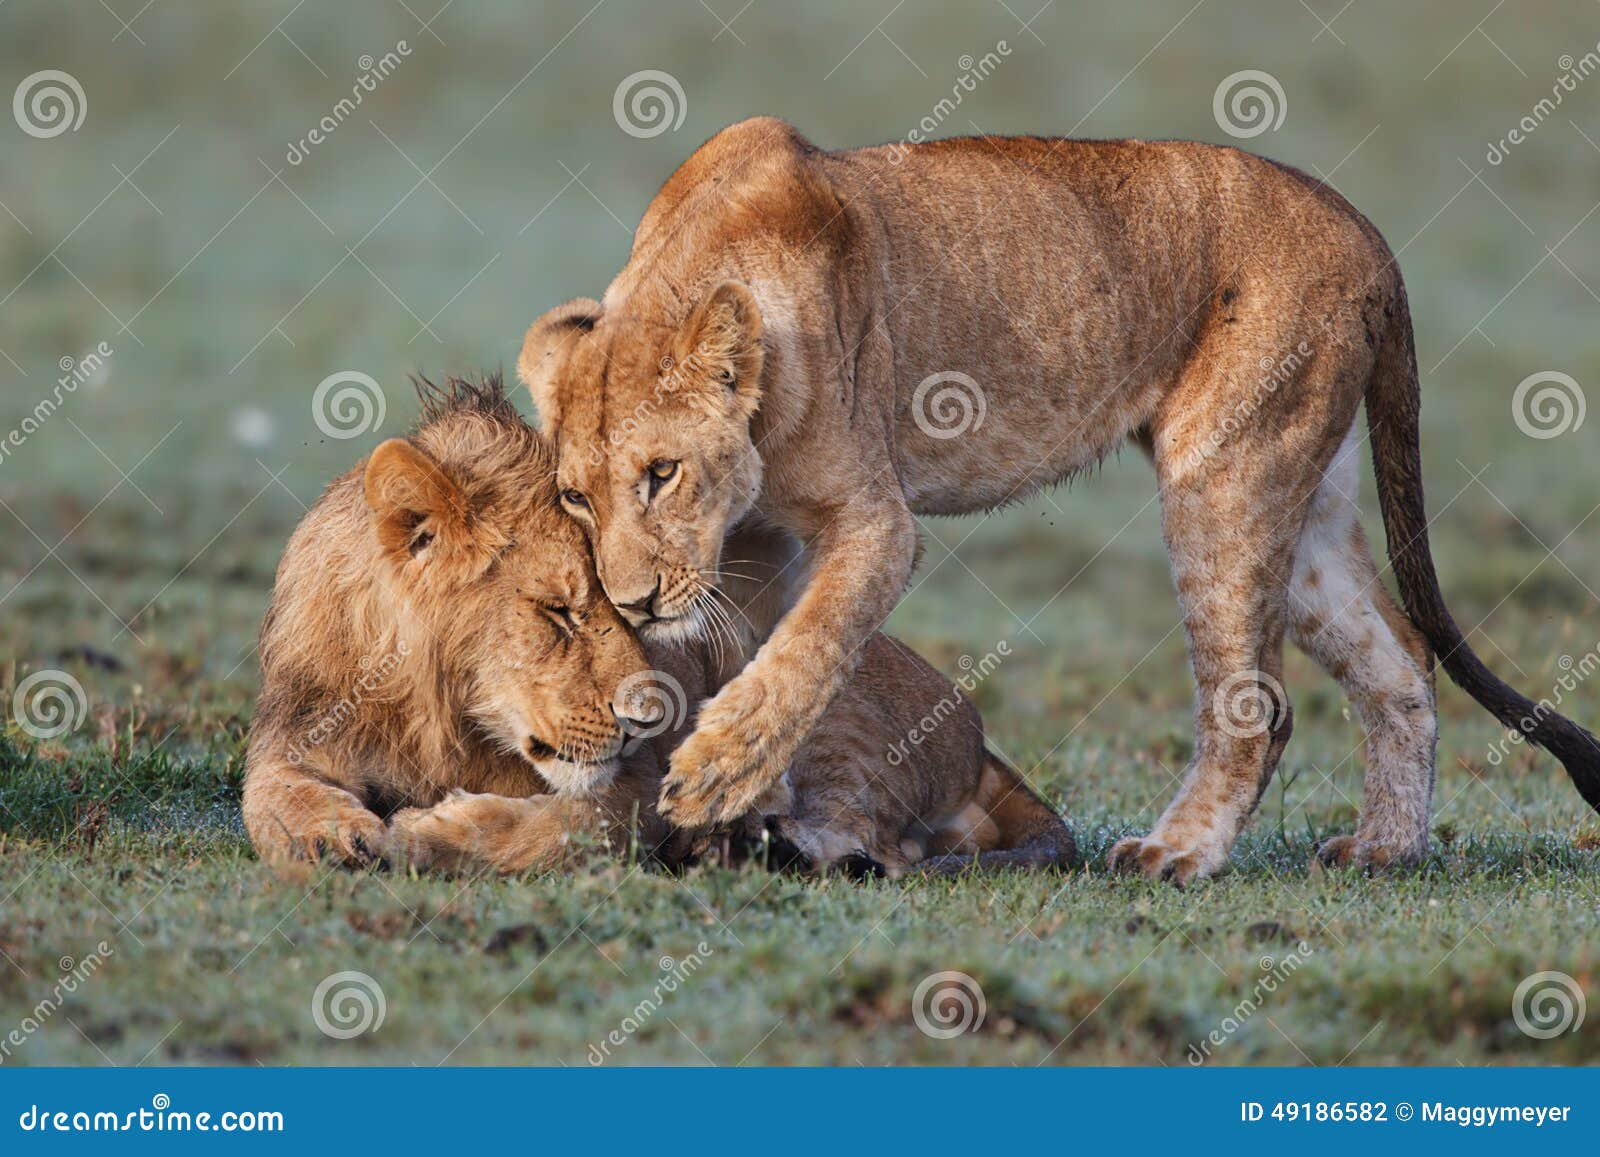 cuddle lions in masai mara